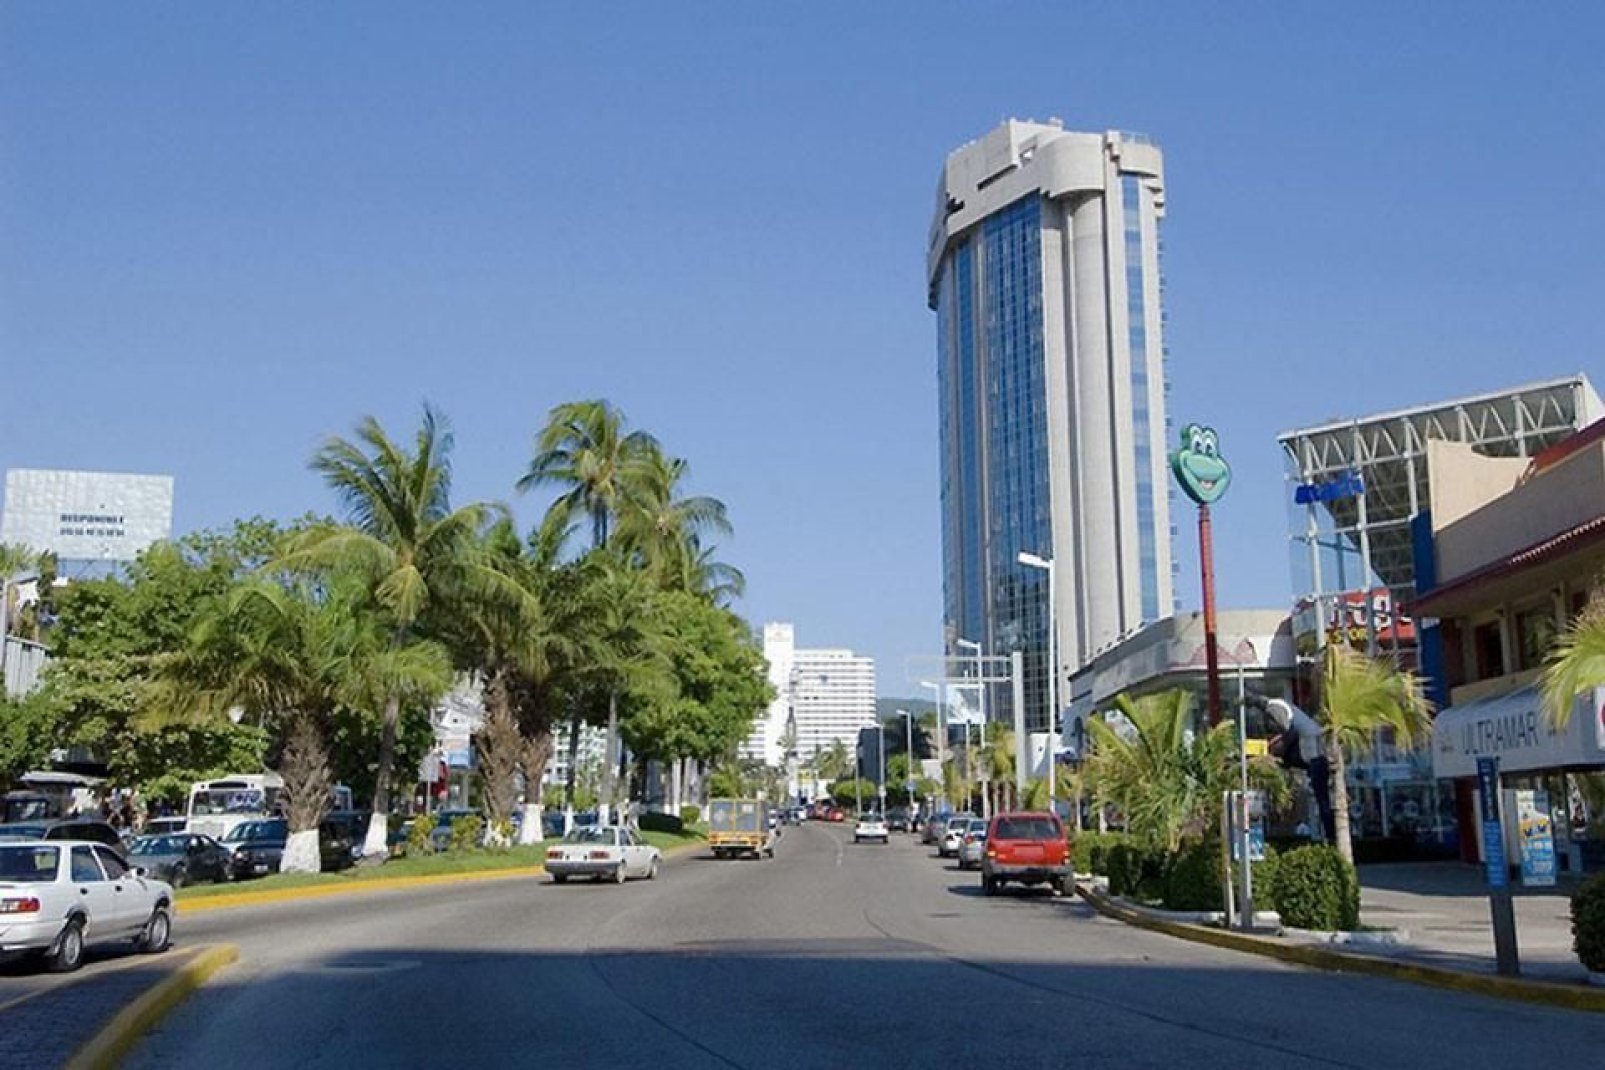 Gli edifici di Acapulco sono ben visibili. Enormi strutture alberghiere sono posizionate a pochi passi dal mare.